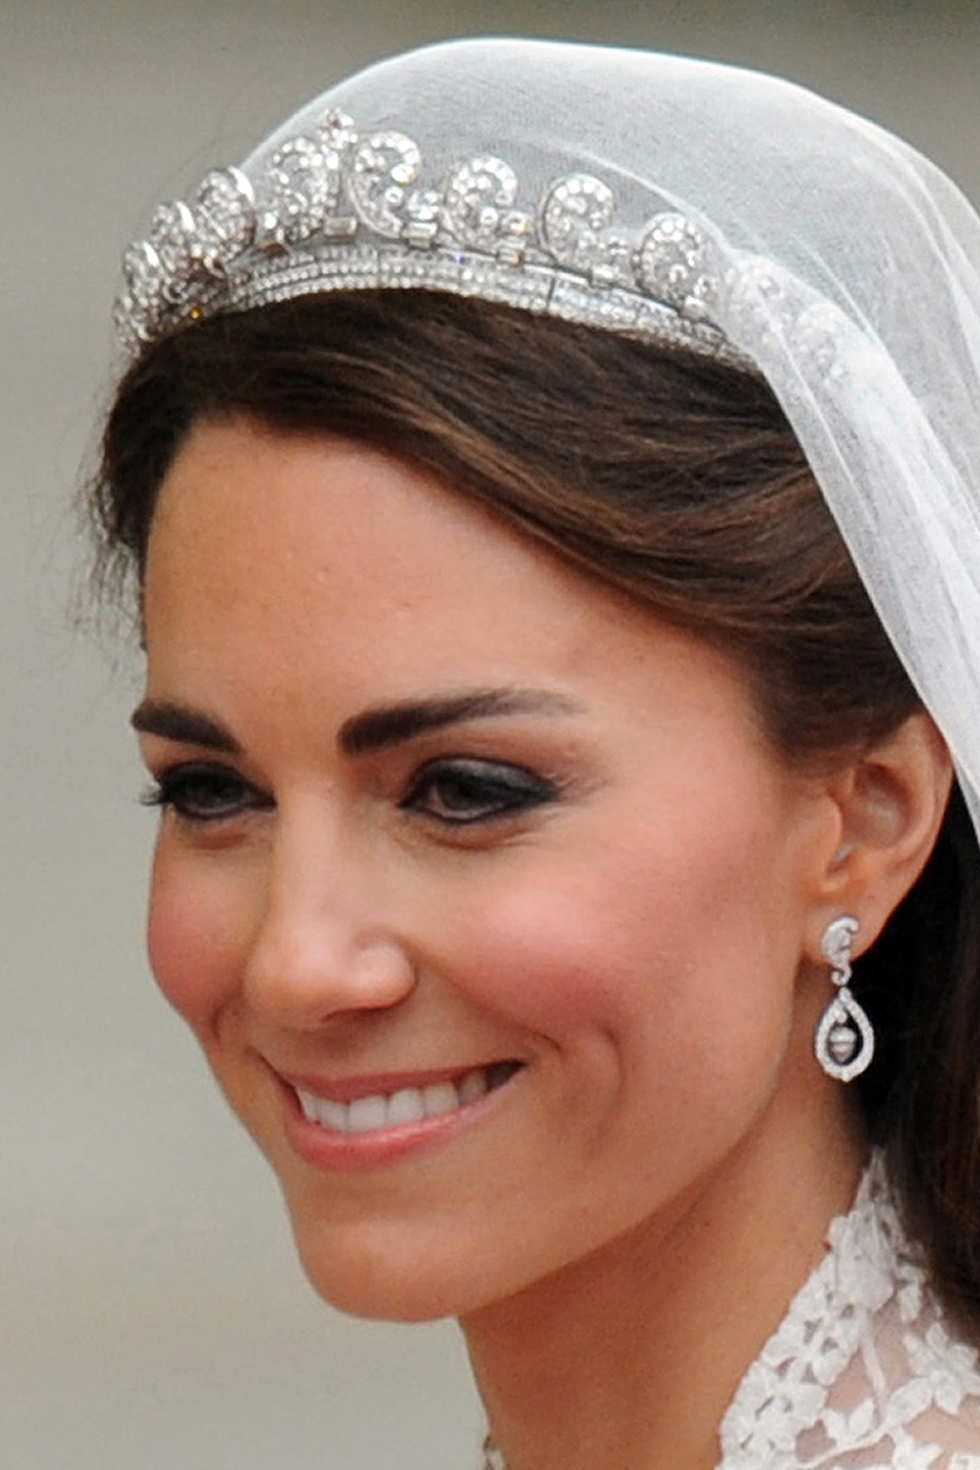 Kate Middleton Wedding Gown